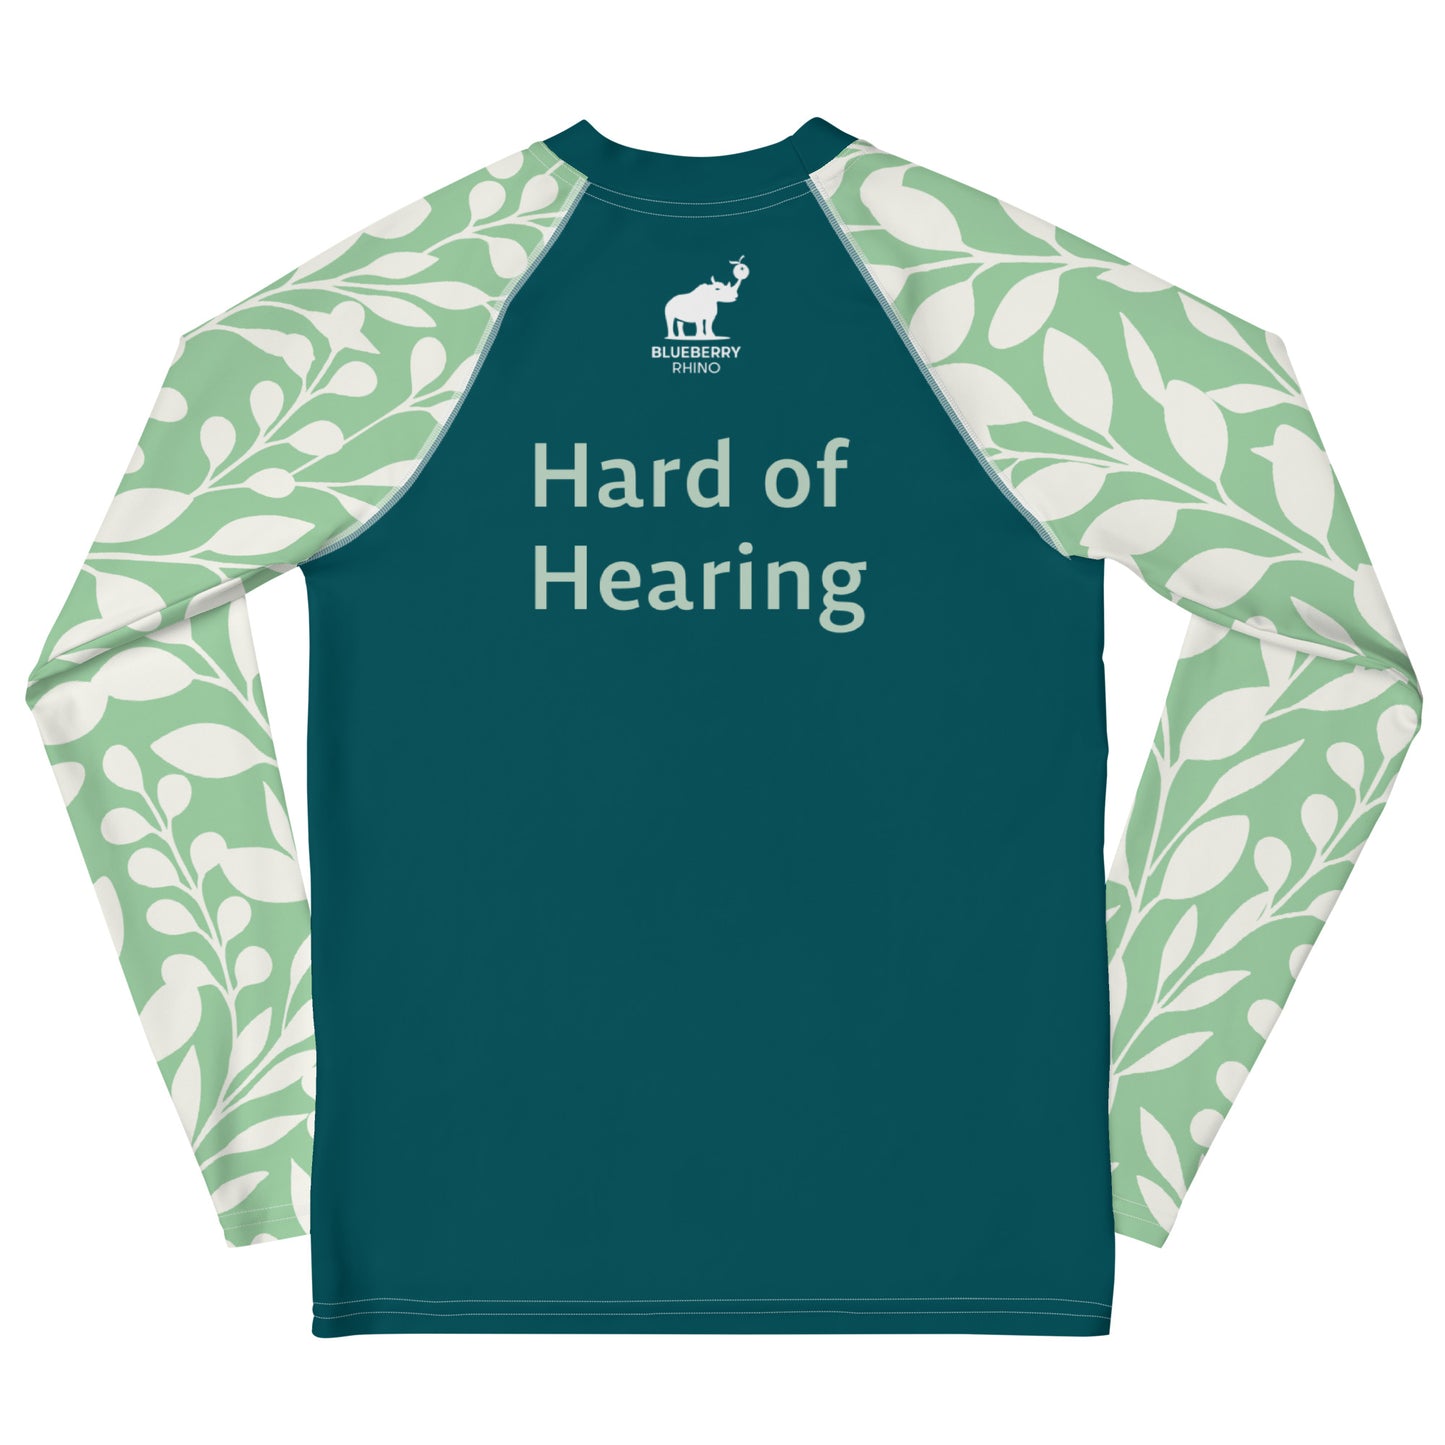 Hard of Hearing - Green Leaf Youth Rash Guard